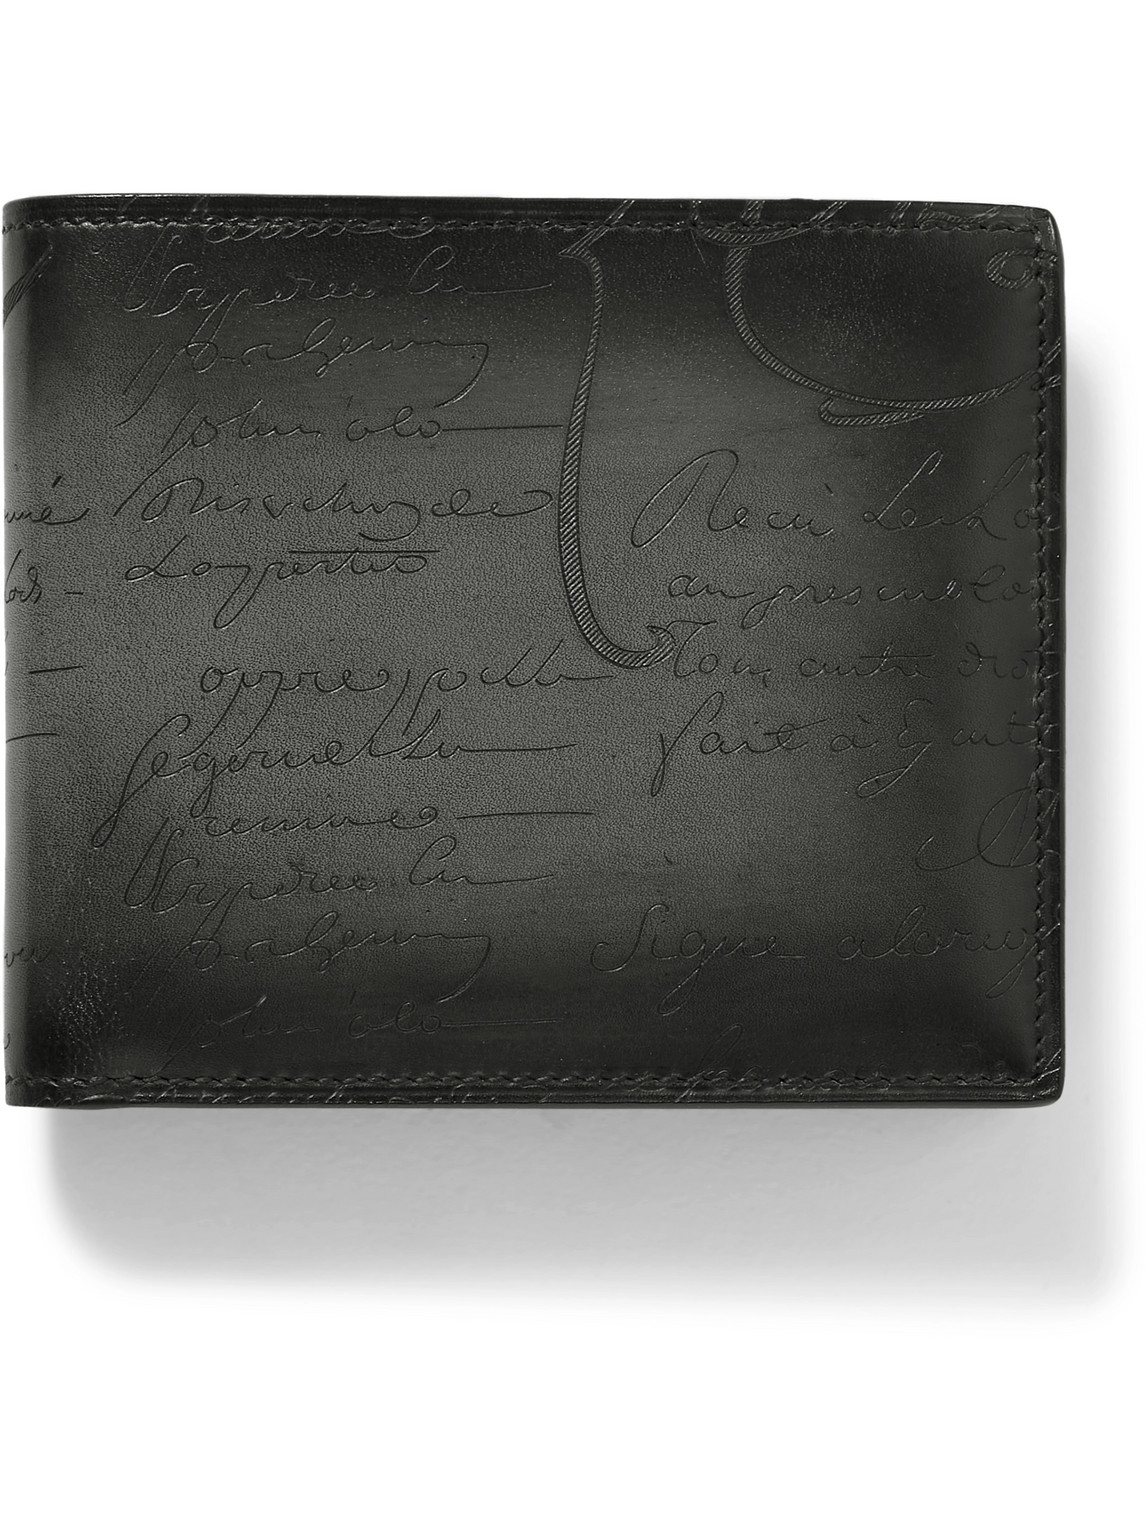 Berluti Scritto Venezia Leather Billfold Wallet In Black